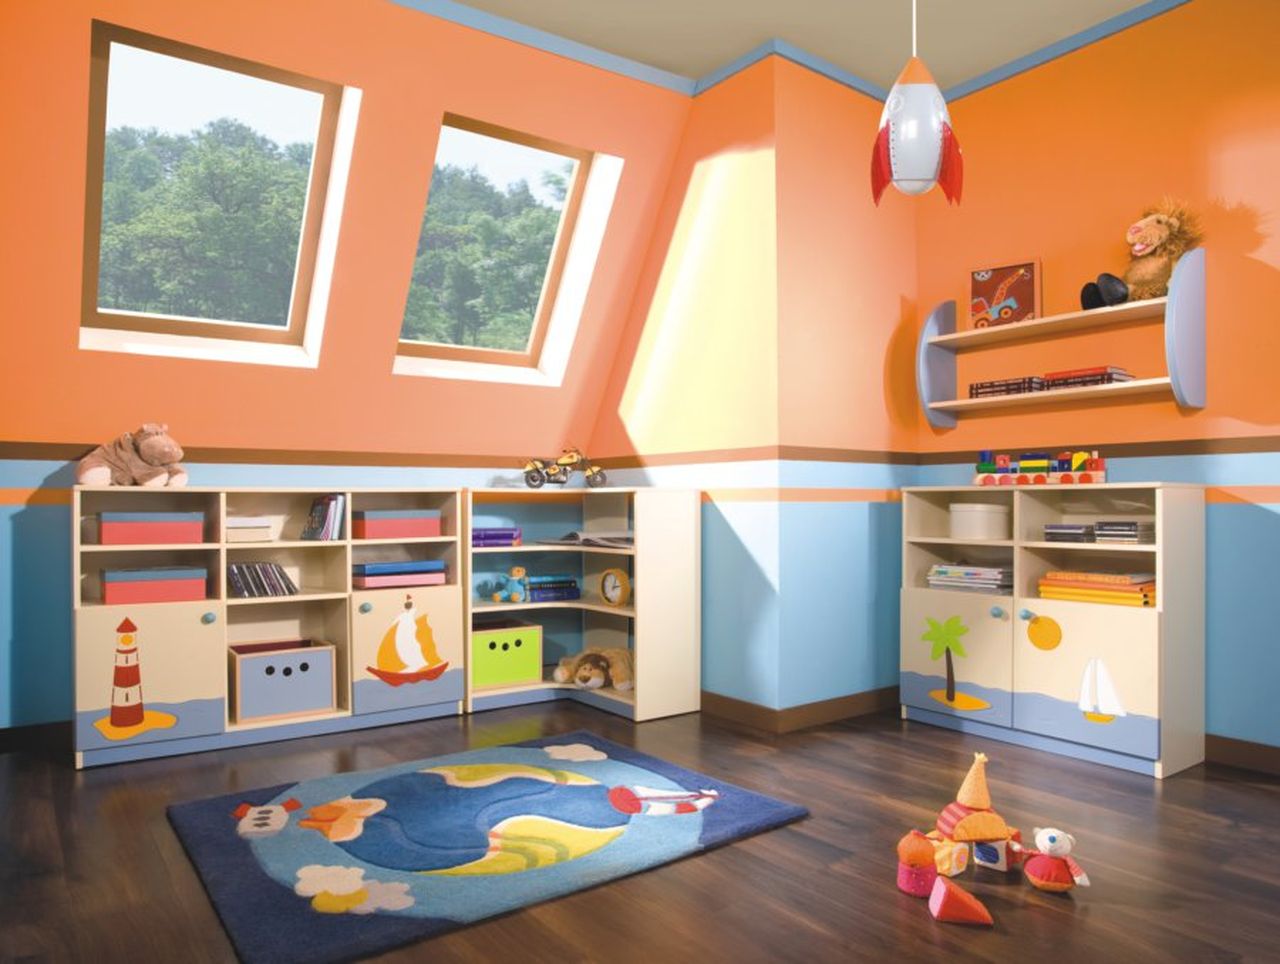 Детская комната: безопасная, экологичная и…любимая